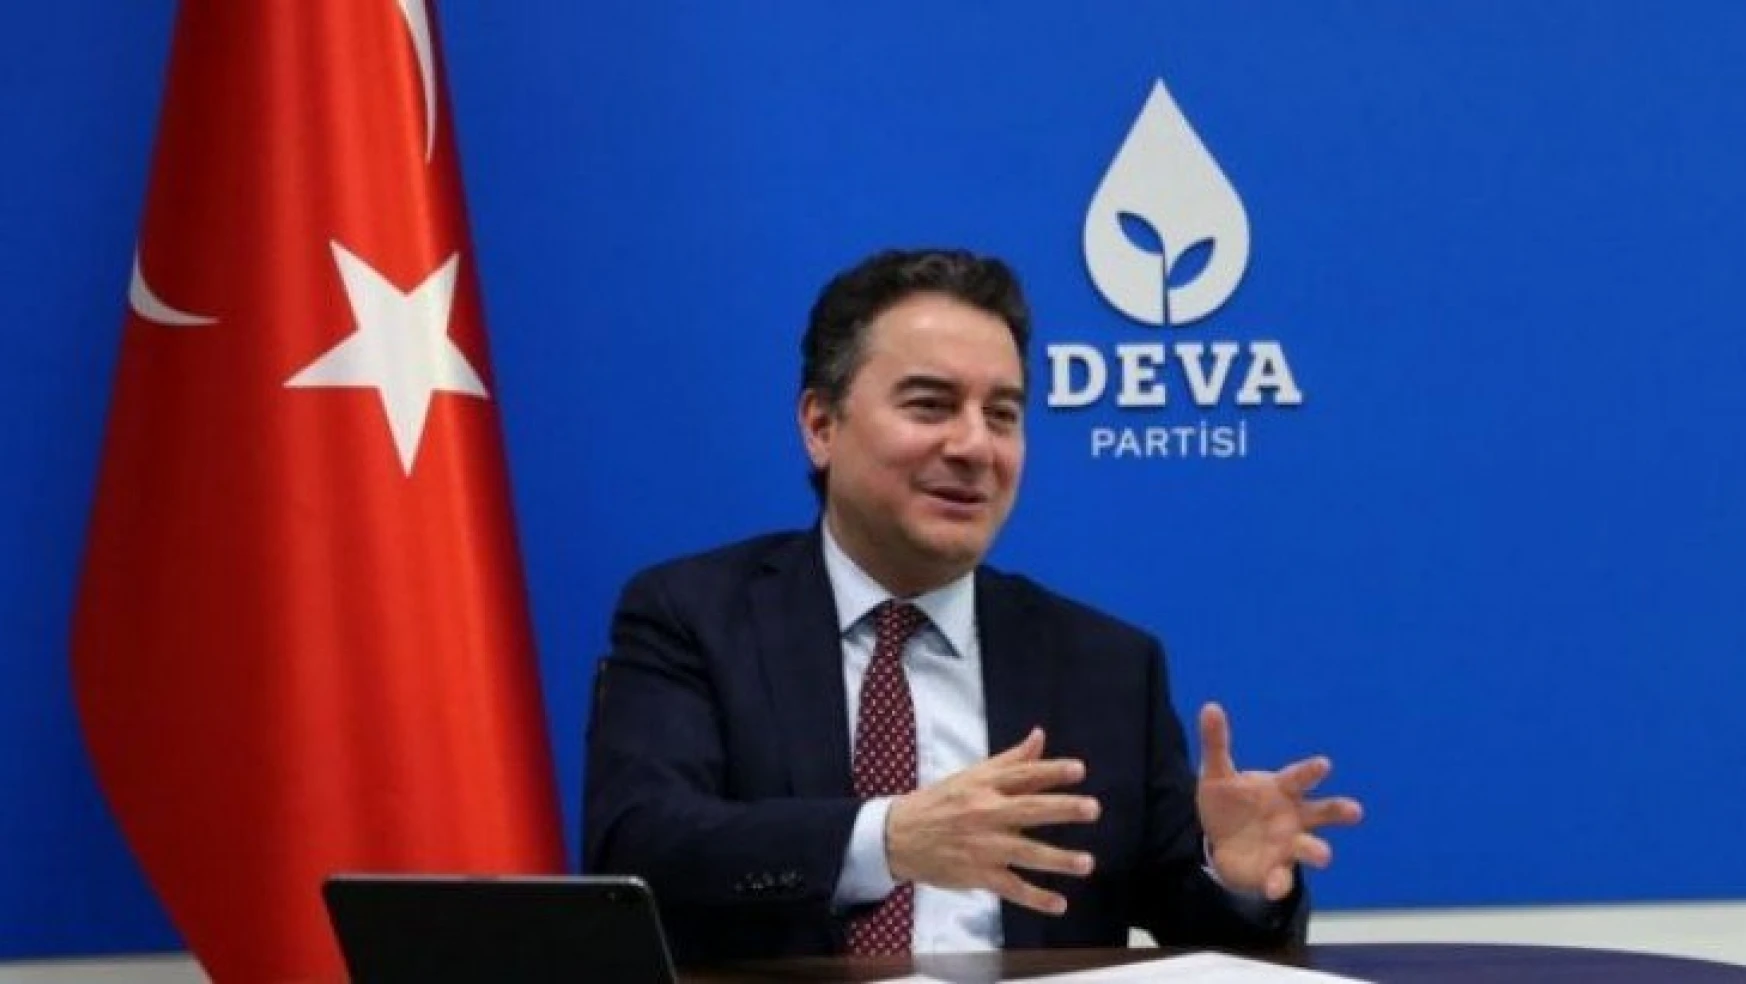 DEVA Partisi İstanbul İl Yönetimi görevden alındı.